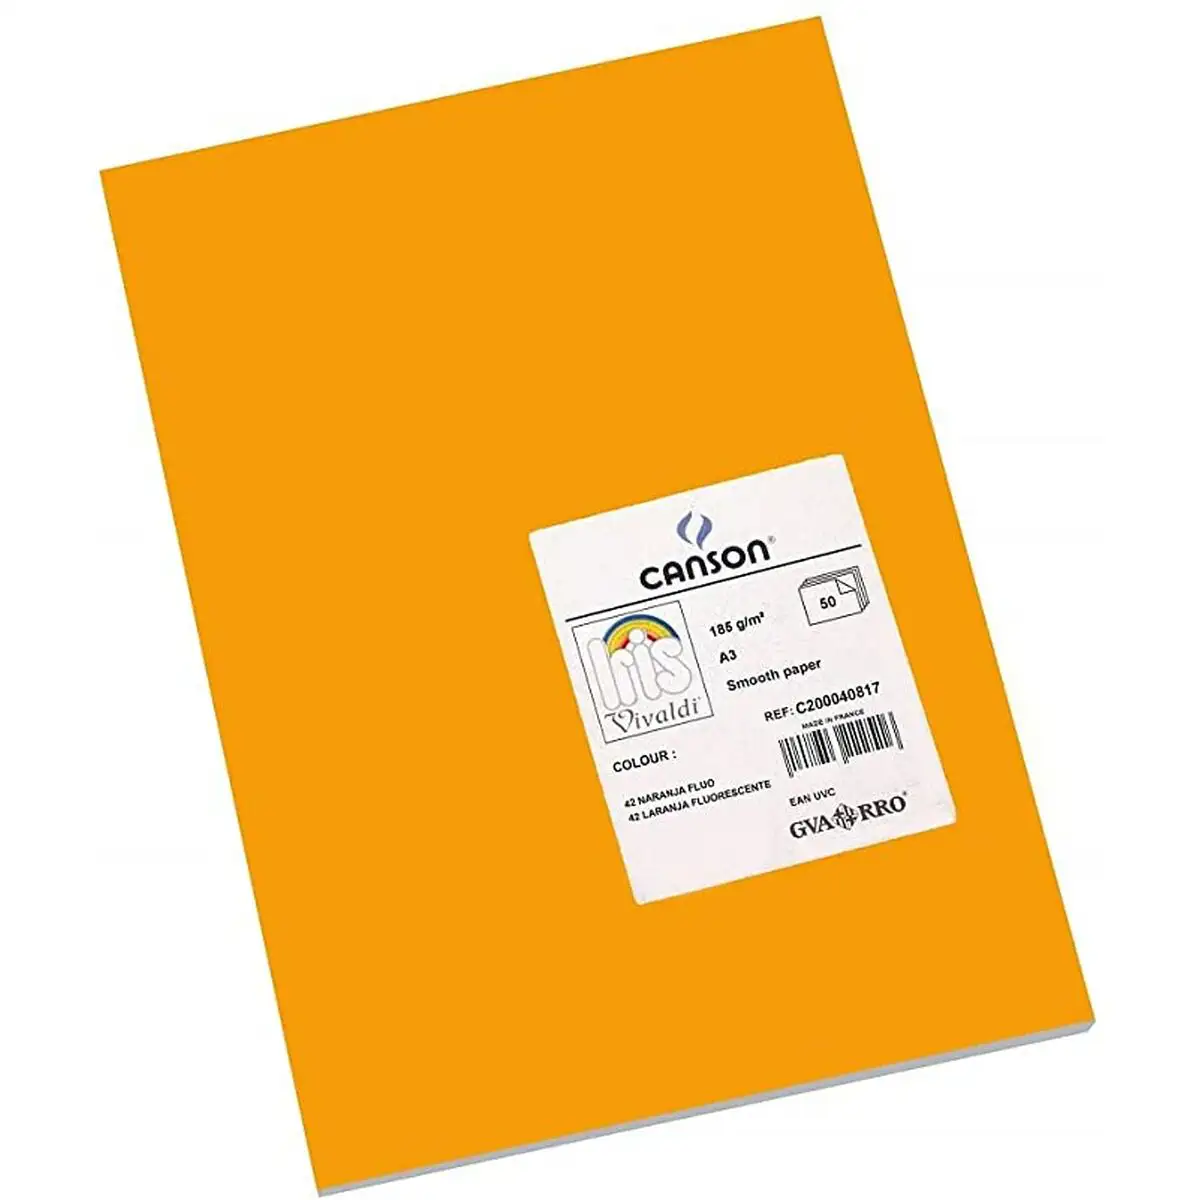 Papiers carton iris orange 50 x 65 cm 25 unites _5824. Bienvenue chez DIAYTAR SENEGAL - Où Chaque Achat Fait une Différence. Découvrez notre gamme de produits qui reflètent l'engagement envers la qualité et le respect de l'environnement.